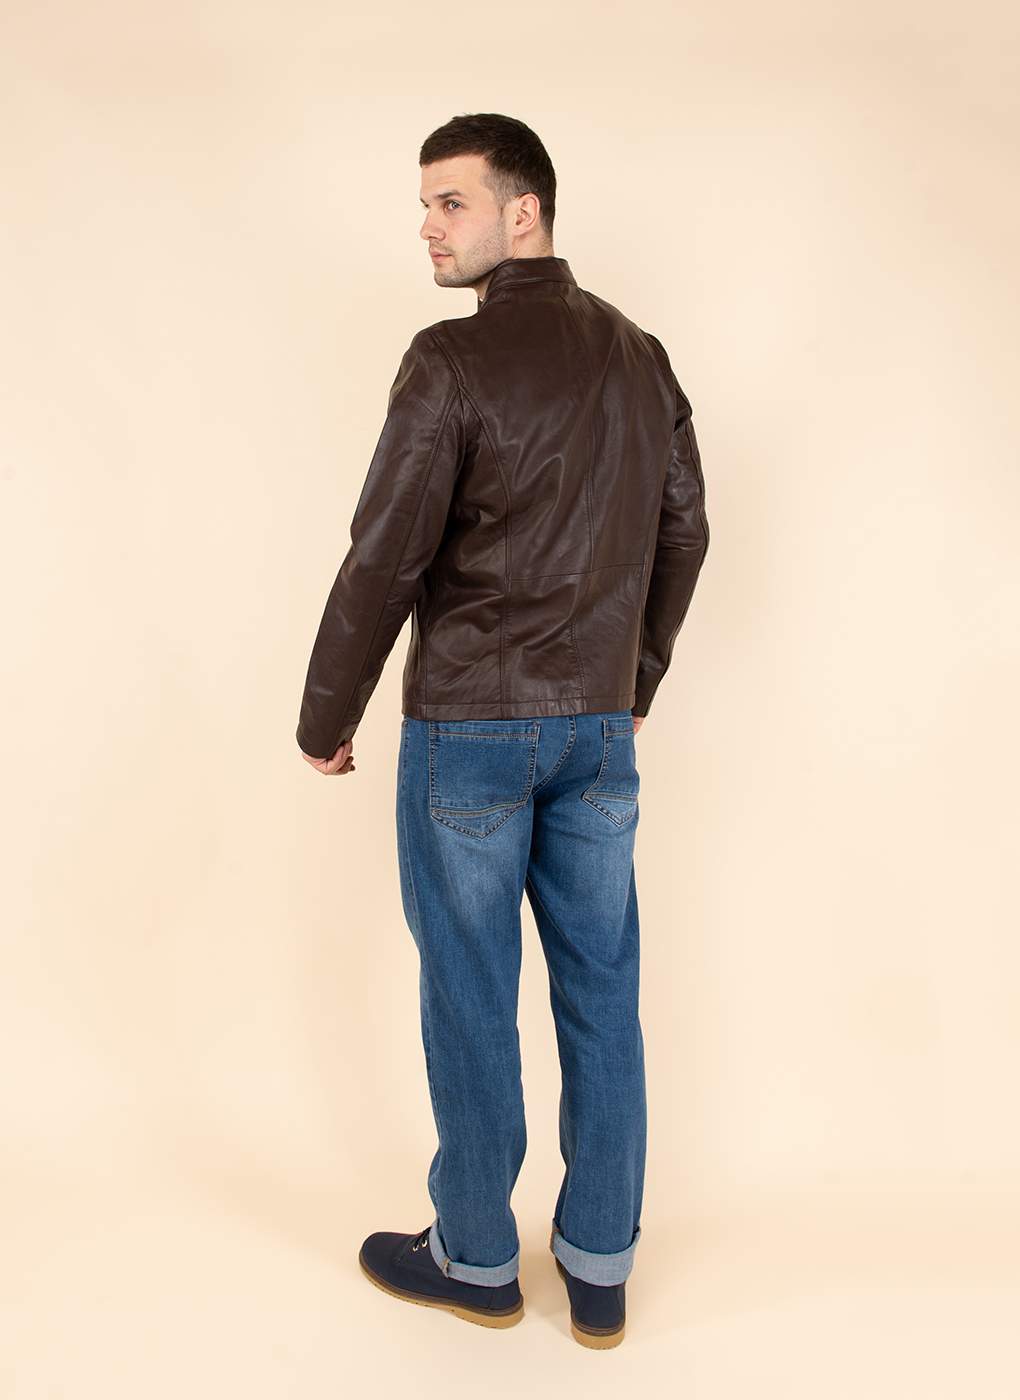 Кожаная куртка мужская Каляев 158984 коричневая 60